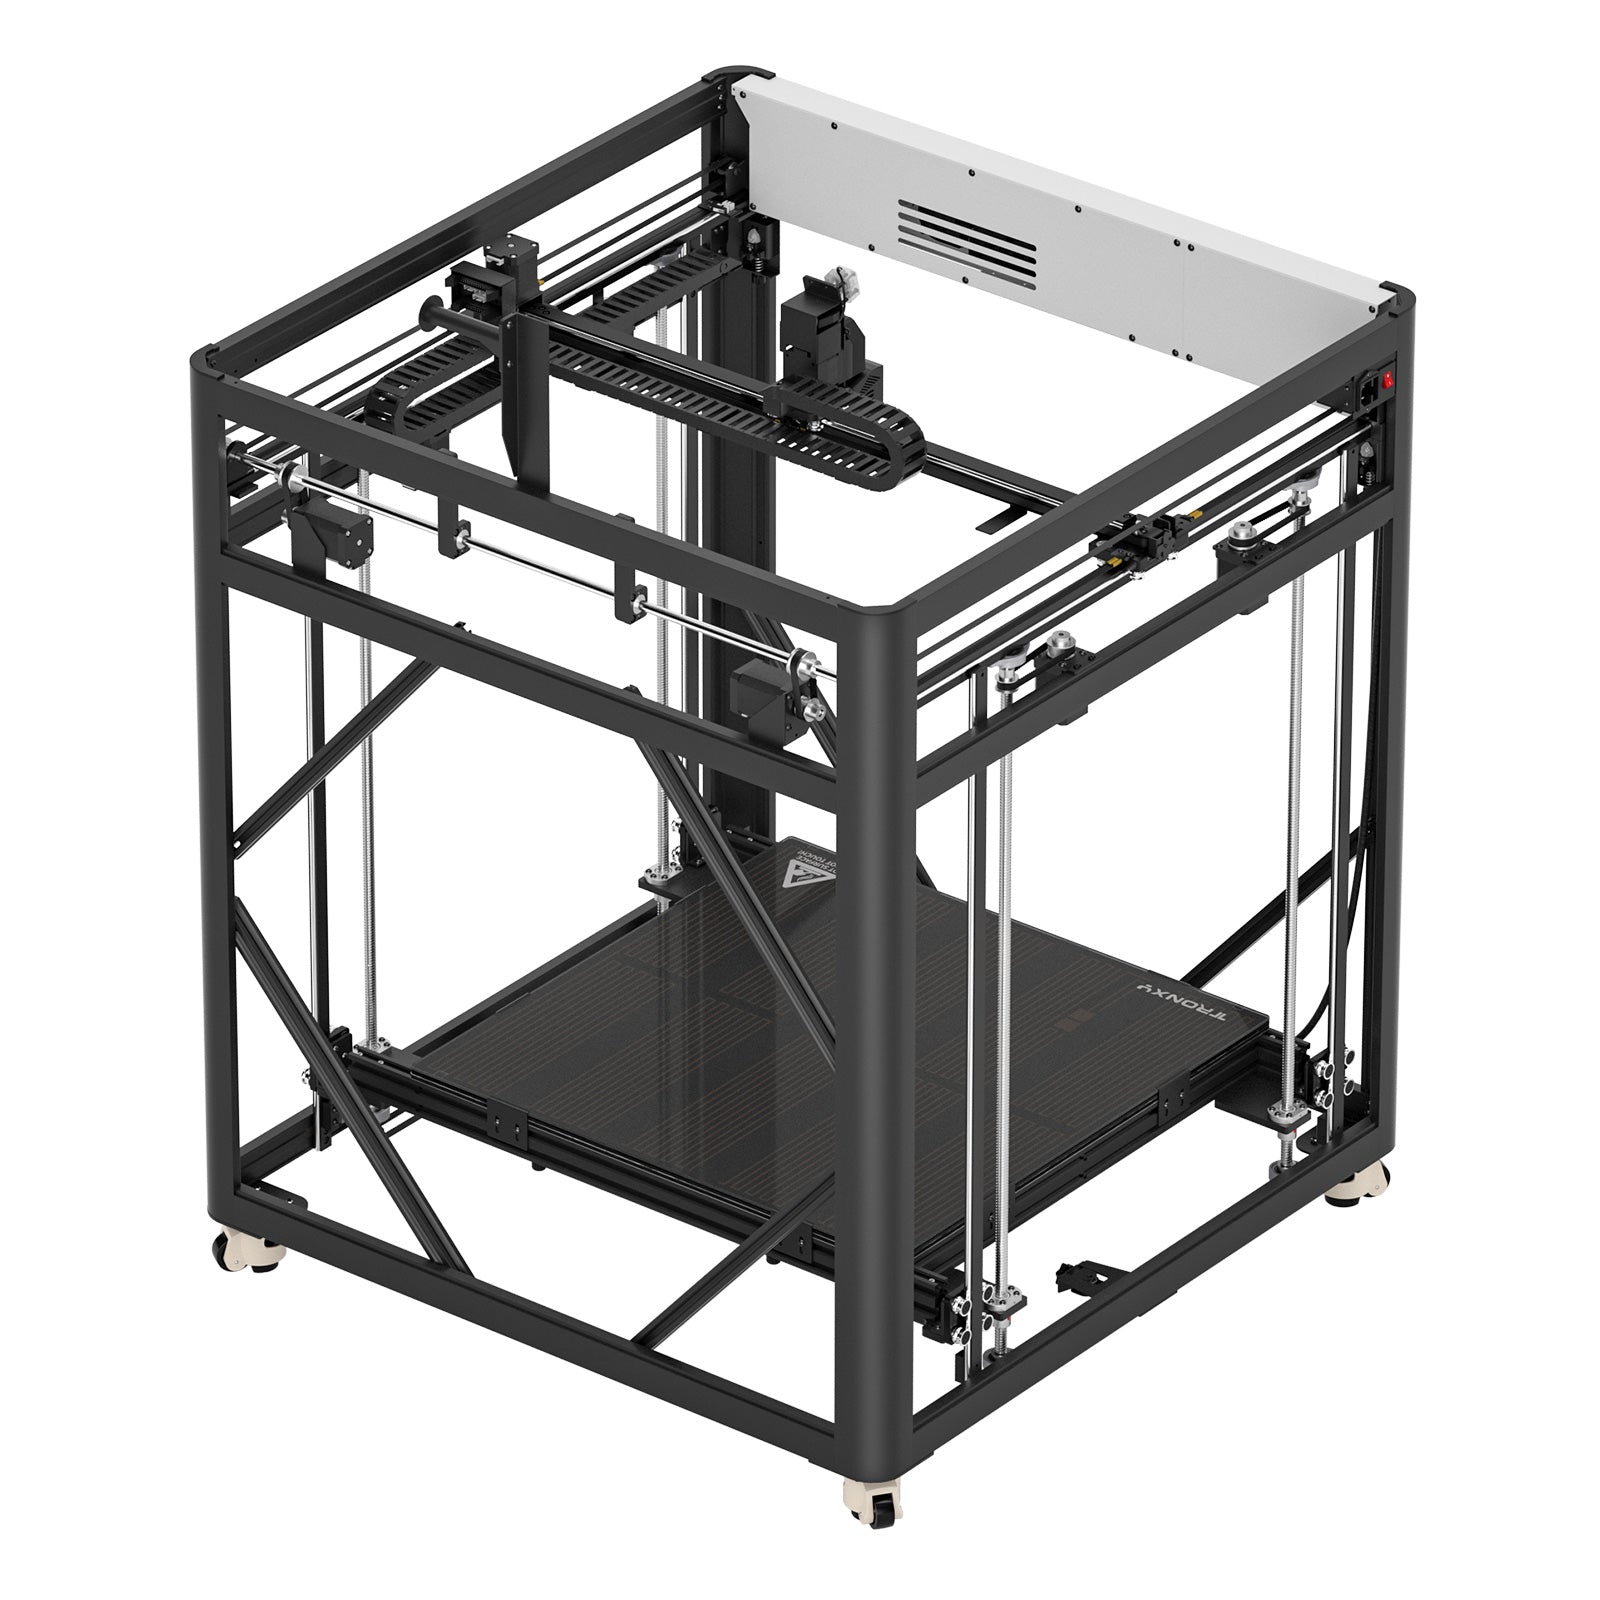 VEHO-600 Großer 3D-Drucker mit Direktantrieb 600 x 600 x 600 mm